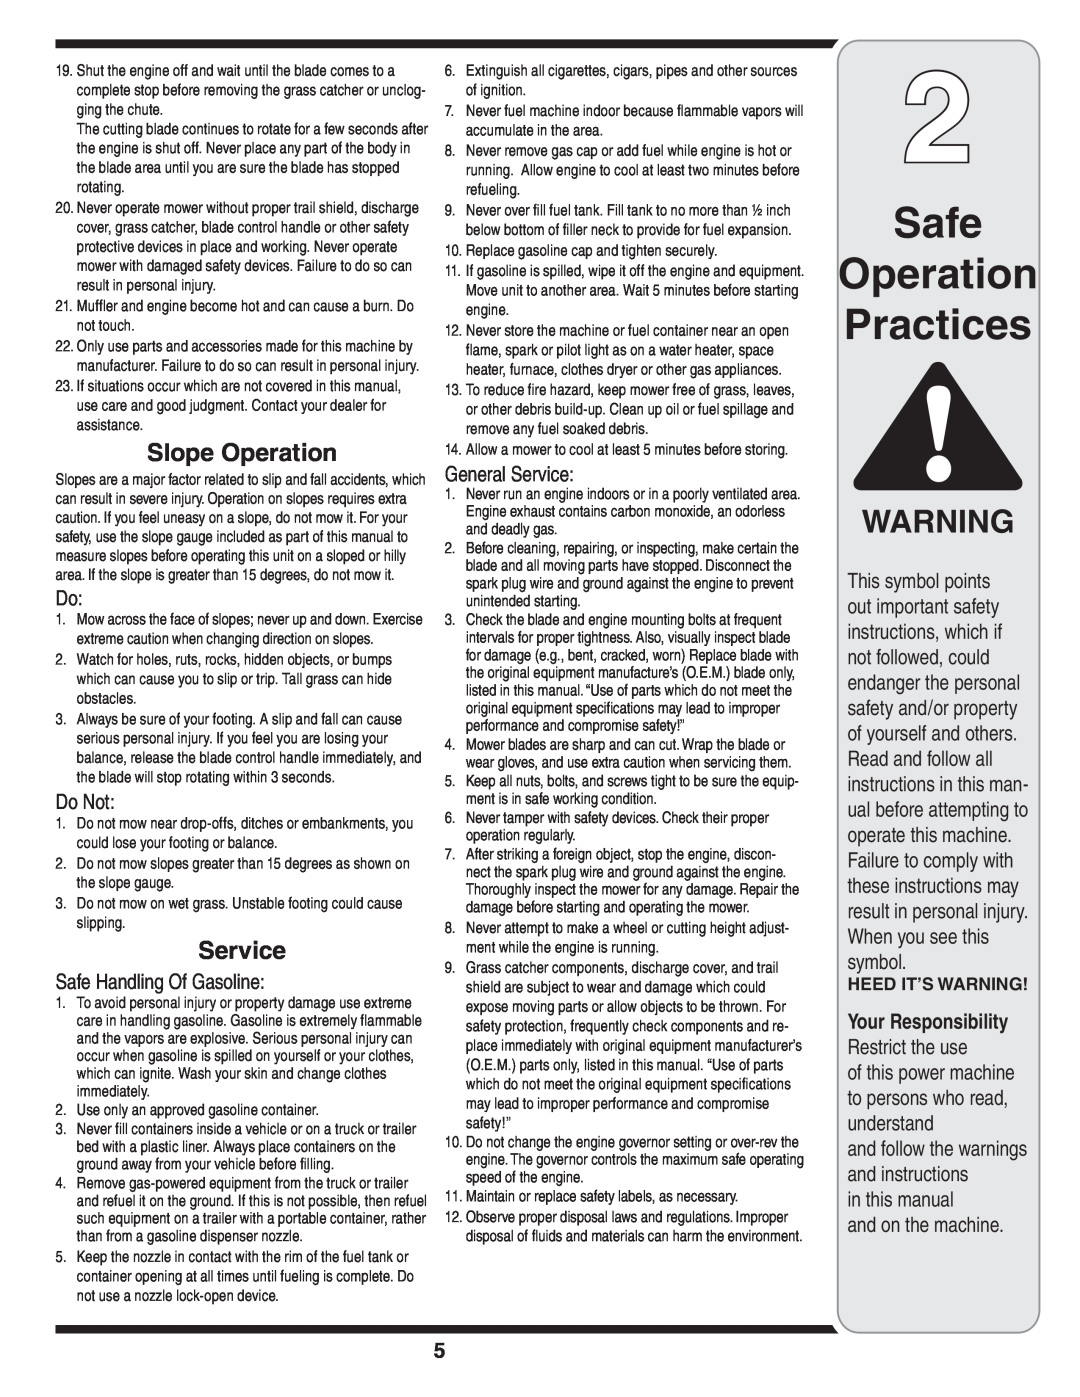 MTD 44M warranty Safe Operation Practices, Slope Operation, Do Not, Safe Handling Of Gasoline, General Service 